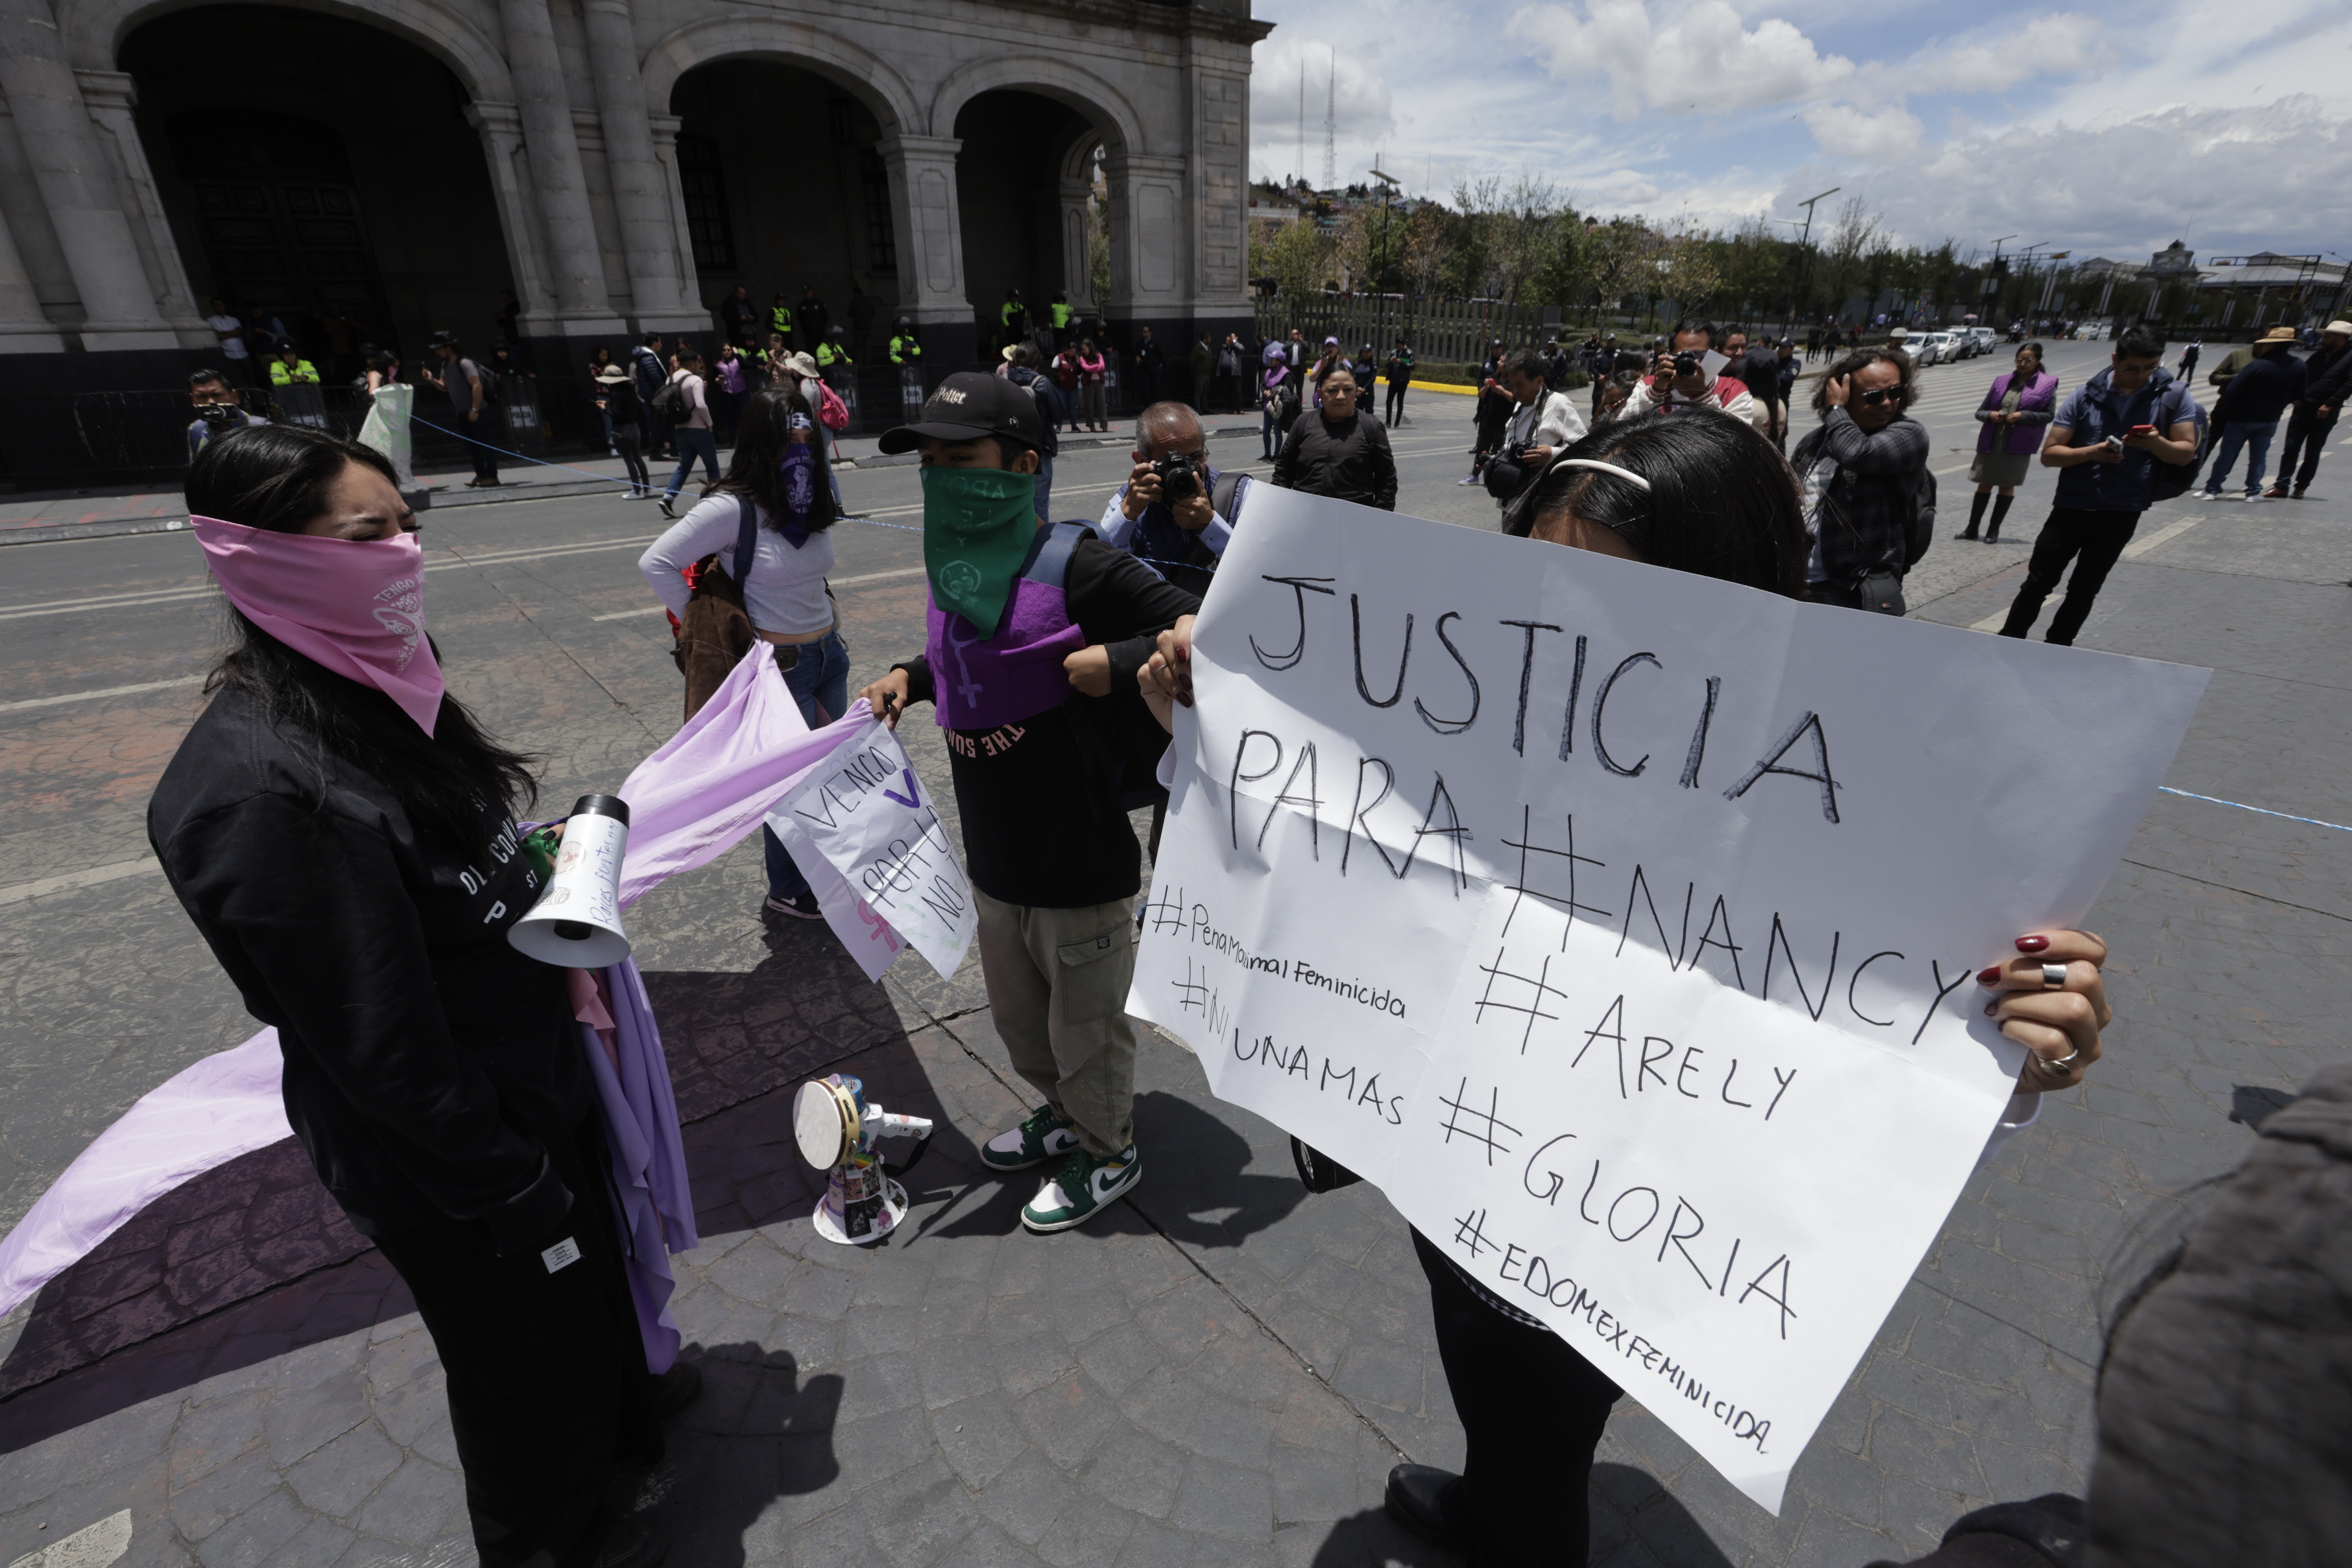 Justicia para Gloria, exigen colectivos en el Centro de Toluca